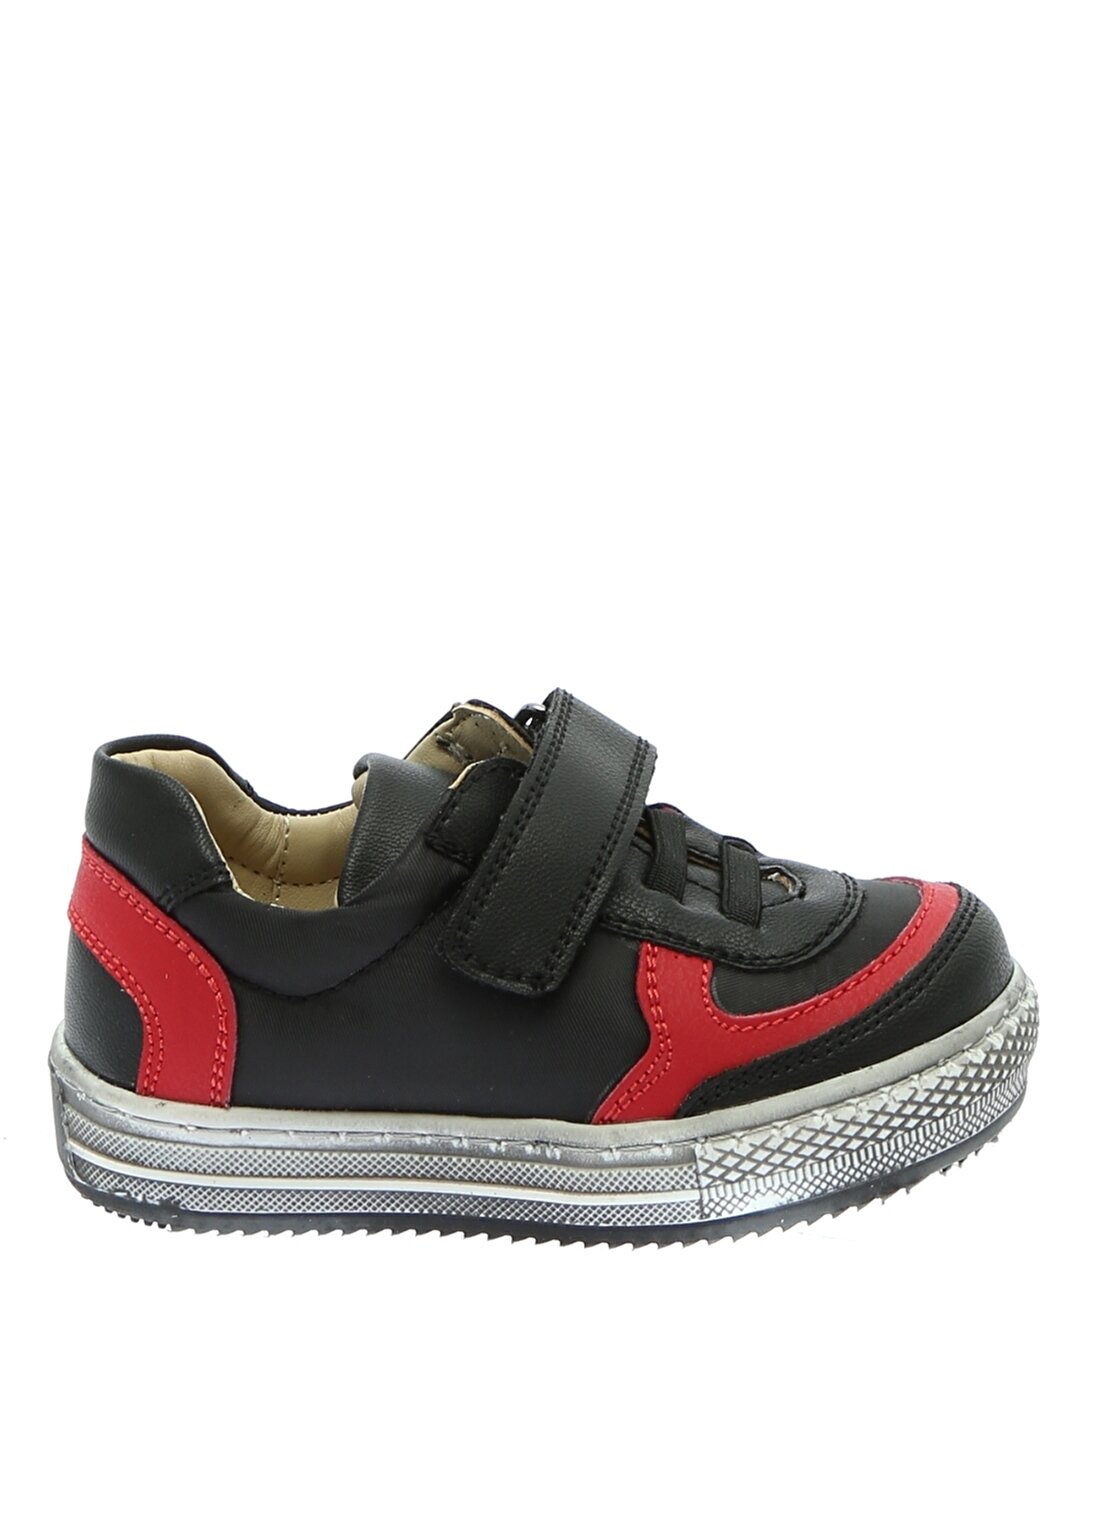 Mammaramma Bantlı Siyah Kırmızı Erkek Çocuk Yürüyüş Ayakkabısı